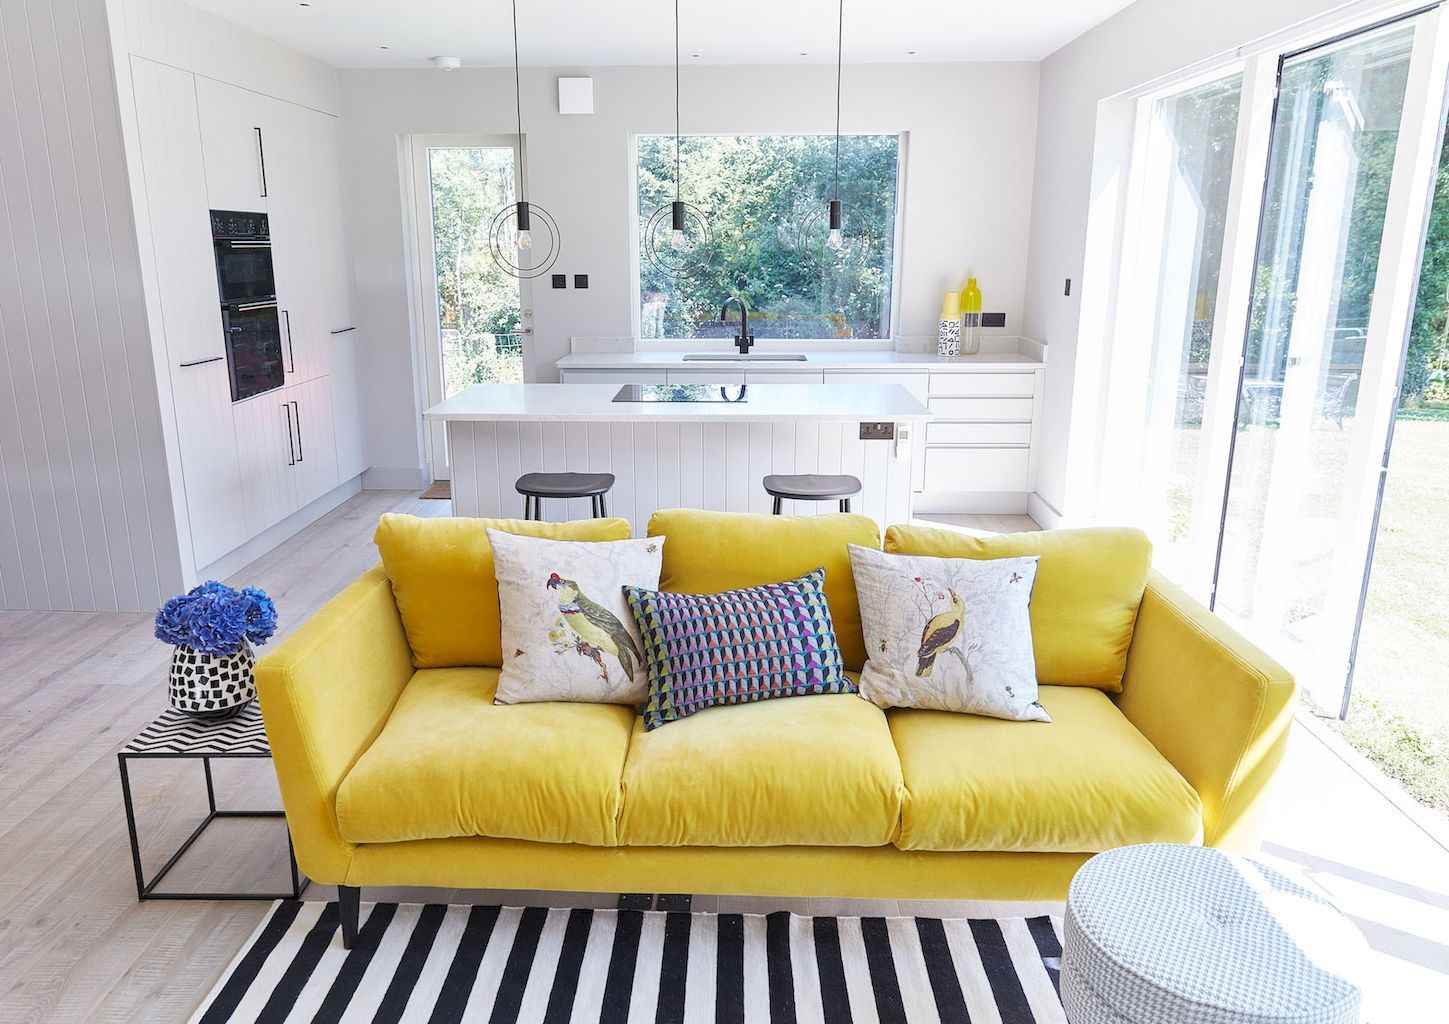 Detox lại căn nhà của bạn bằng cách thay đổi bọc ghế sofa